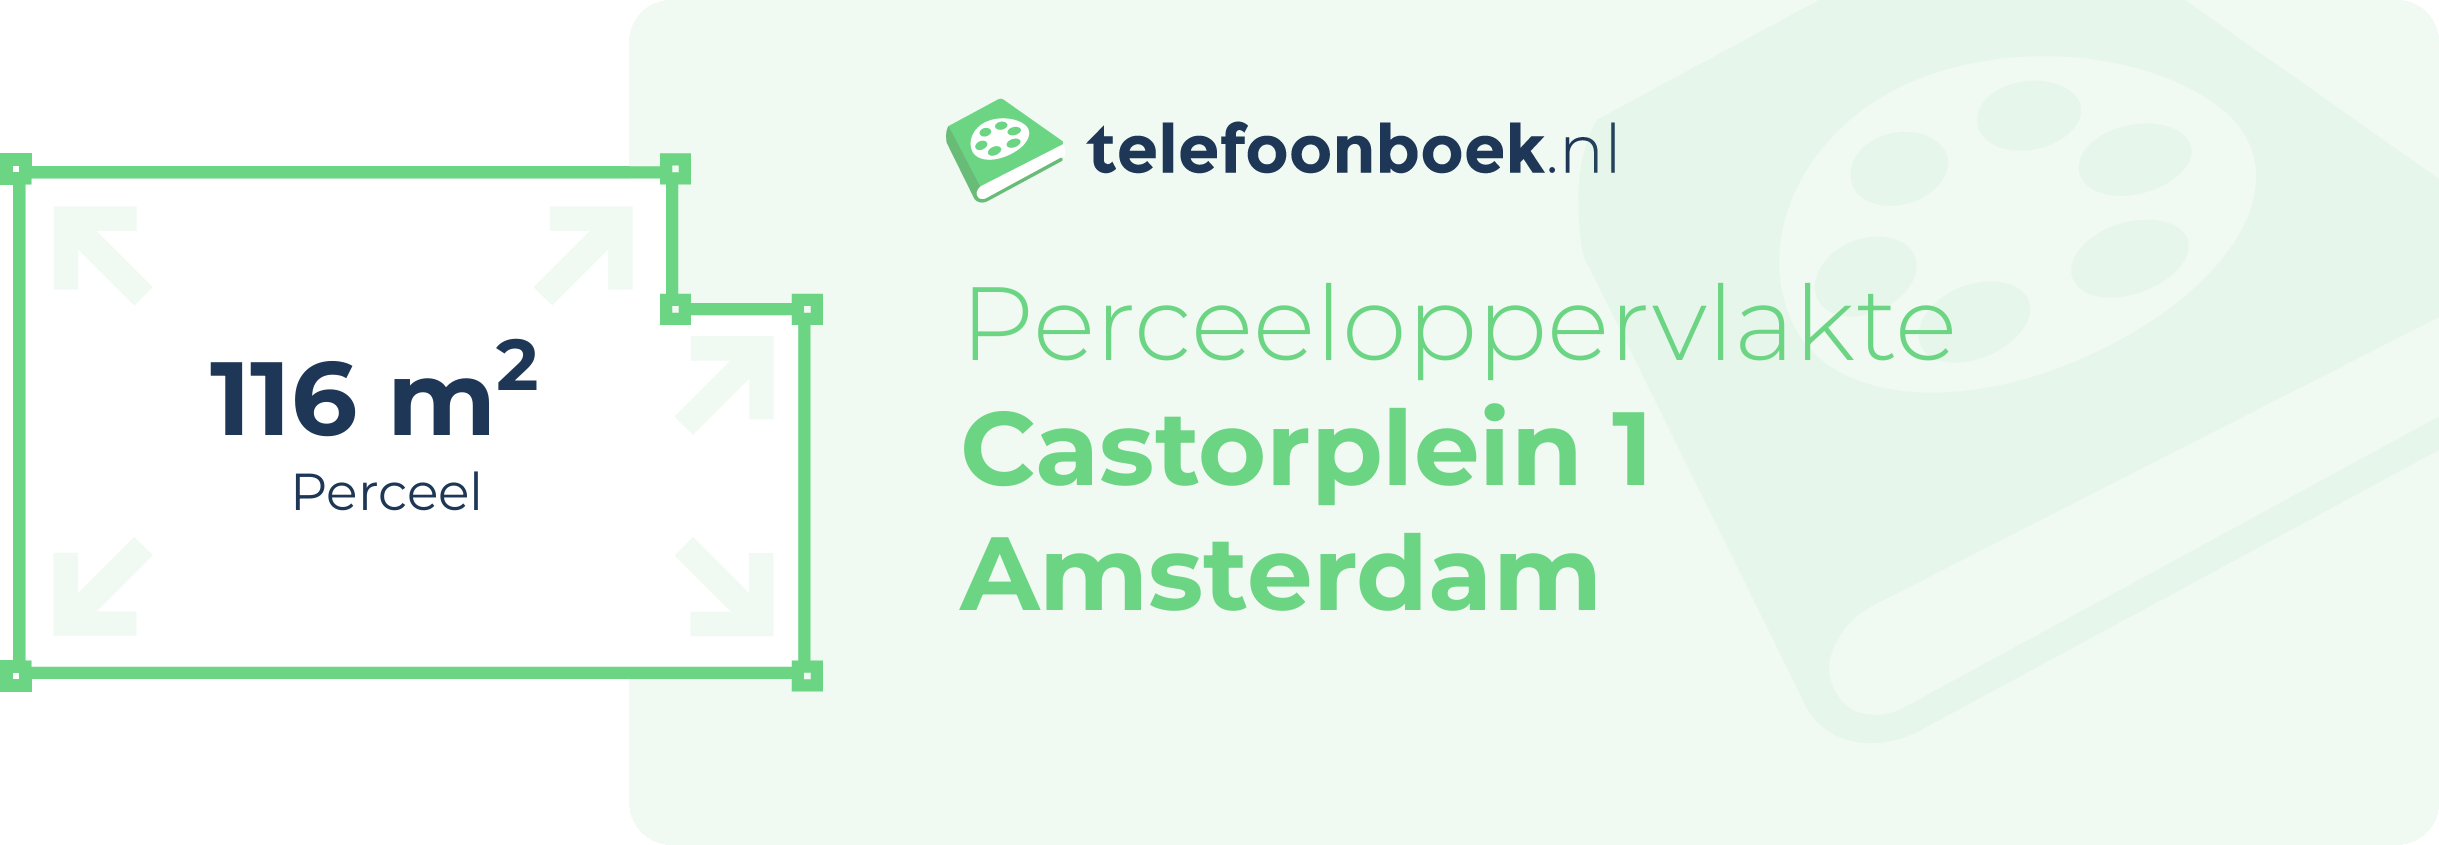 Perceeloppervlakte Castorplein 1 Amsterdam